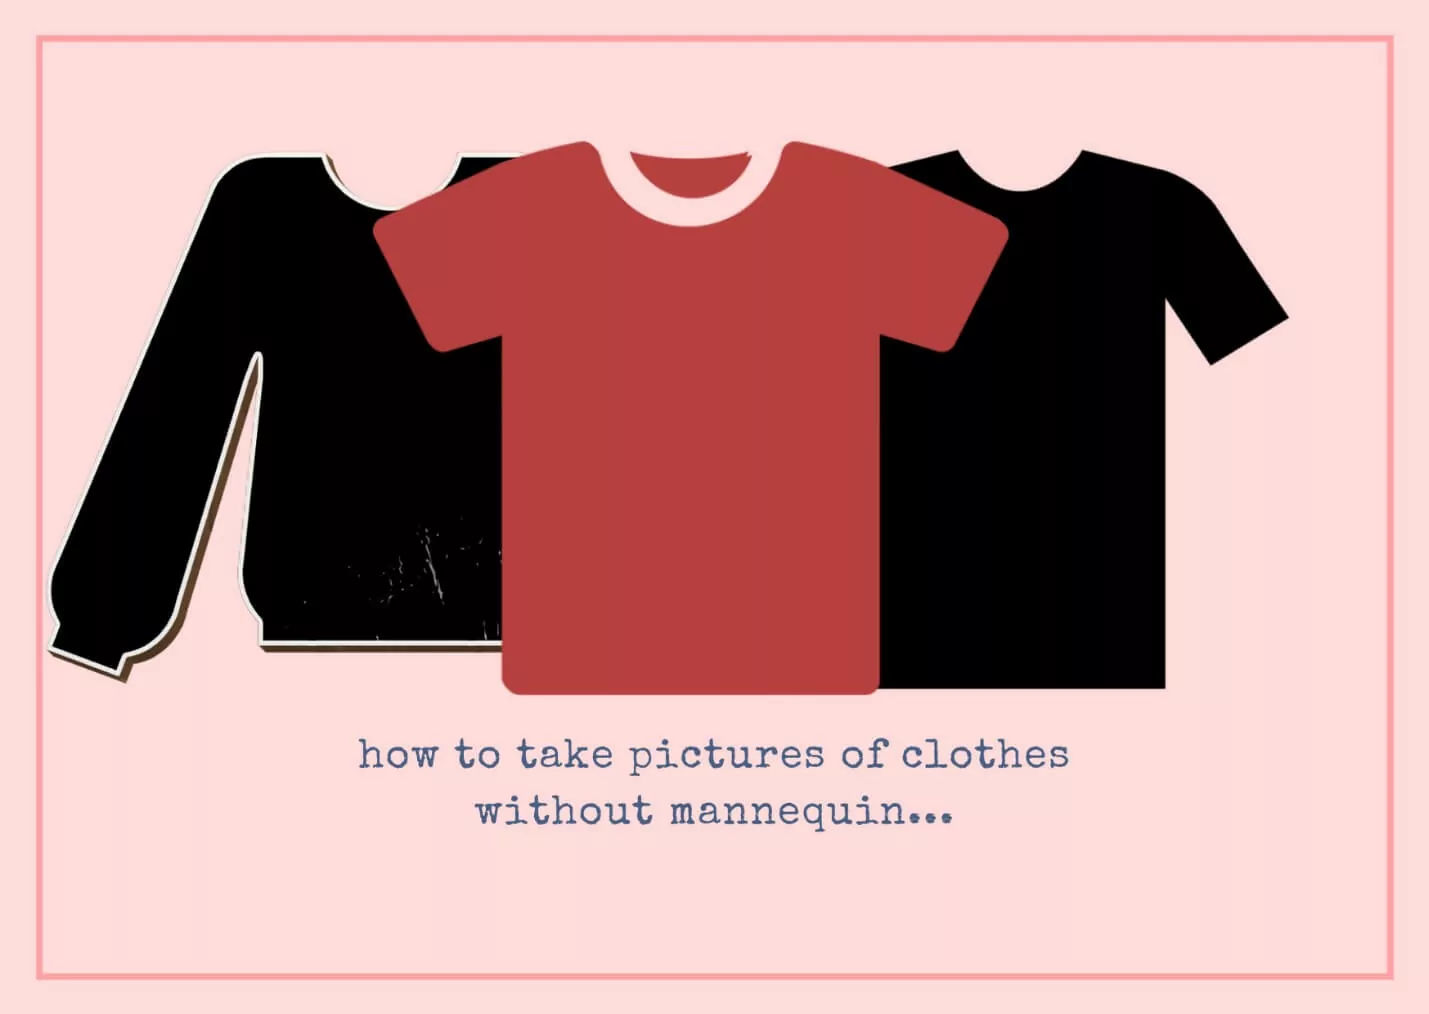 Como tirar fotos de roupas sem manequim?